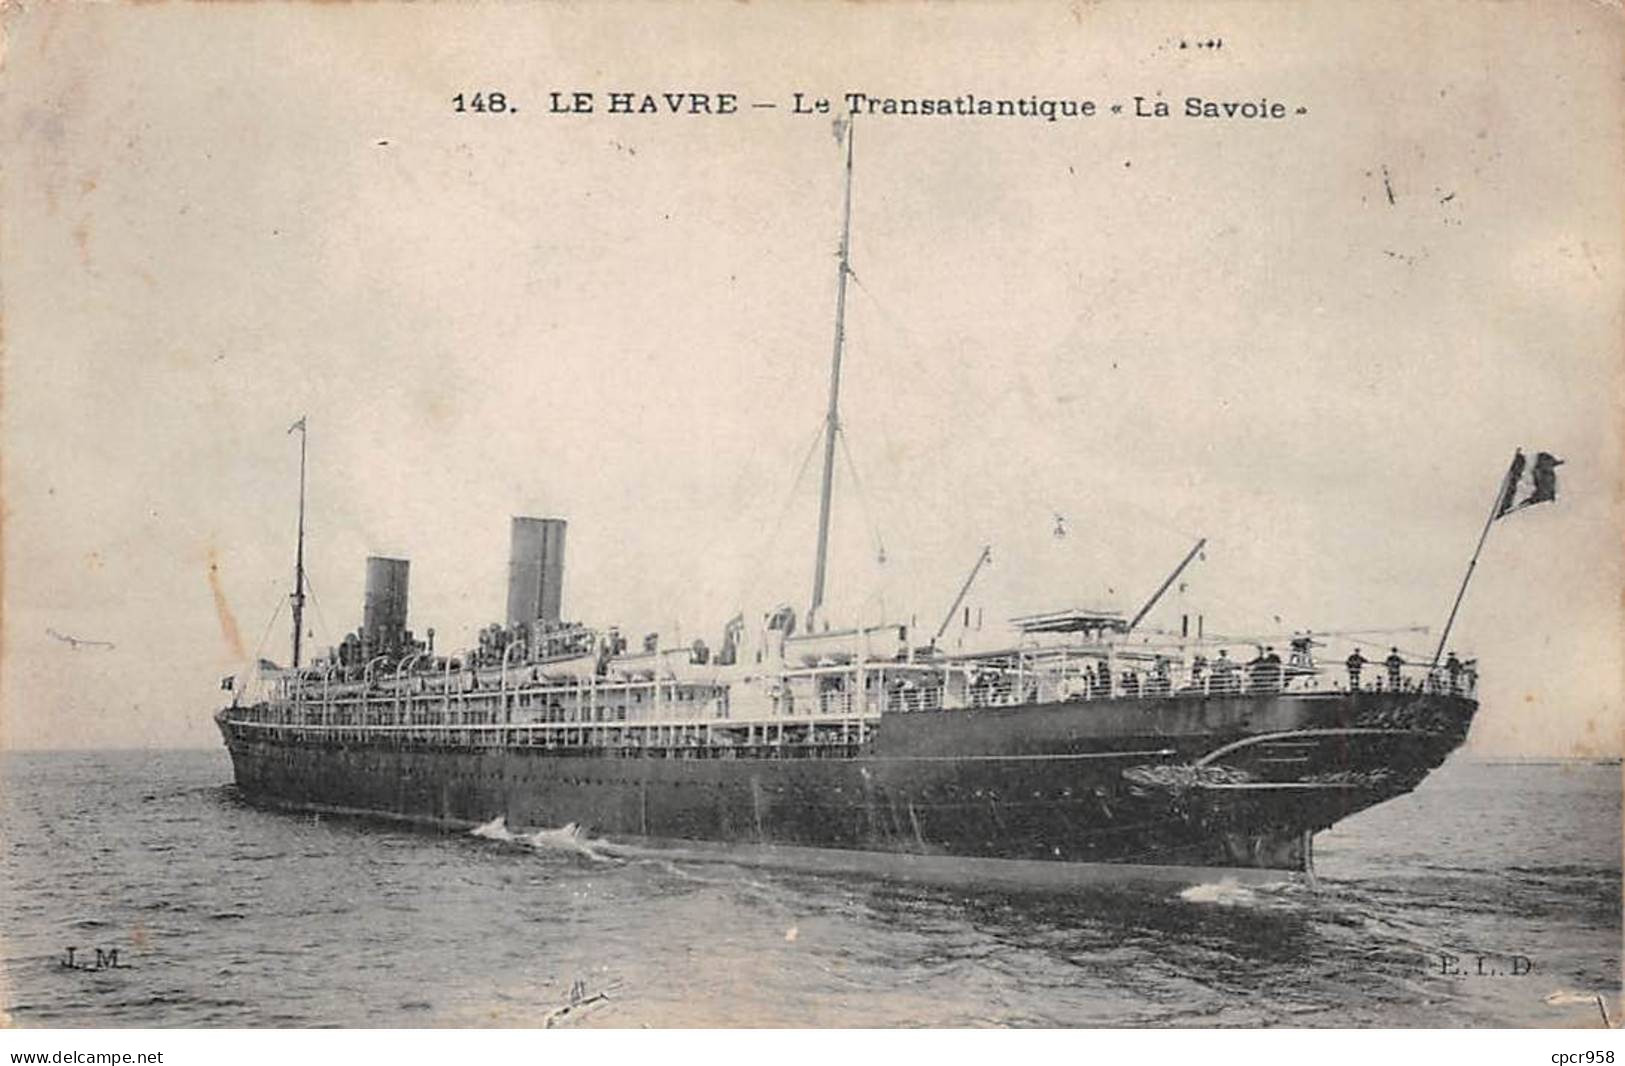 BATEAUX - SAN50963 - Le Havre - Le Transatlantique "La Savoie" - Paquebots